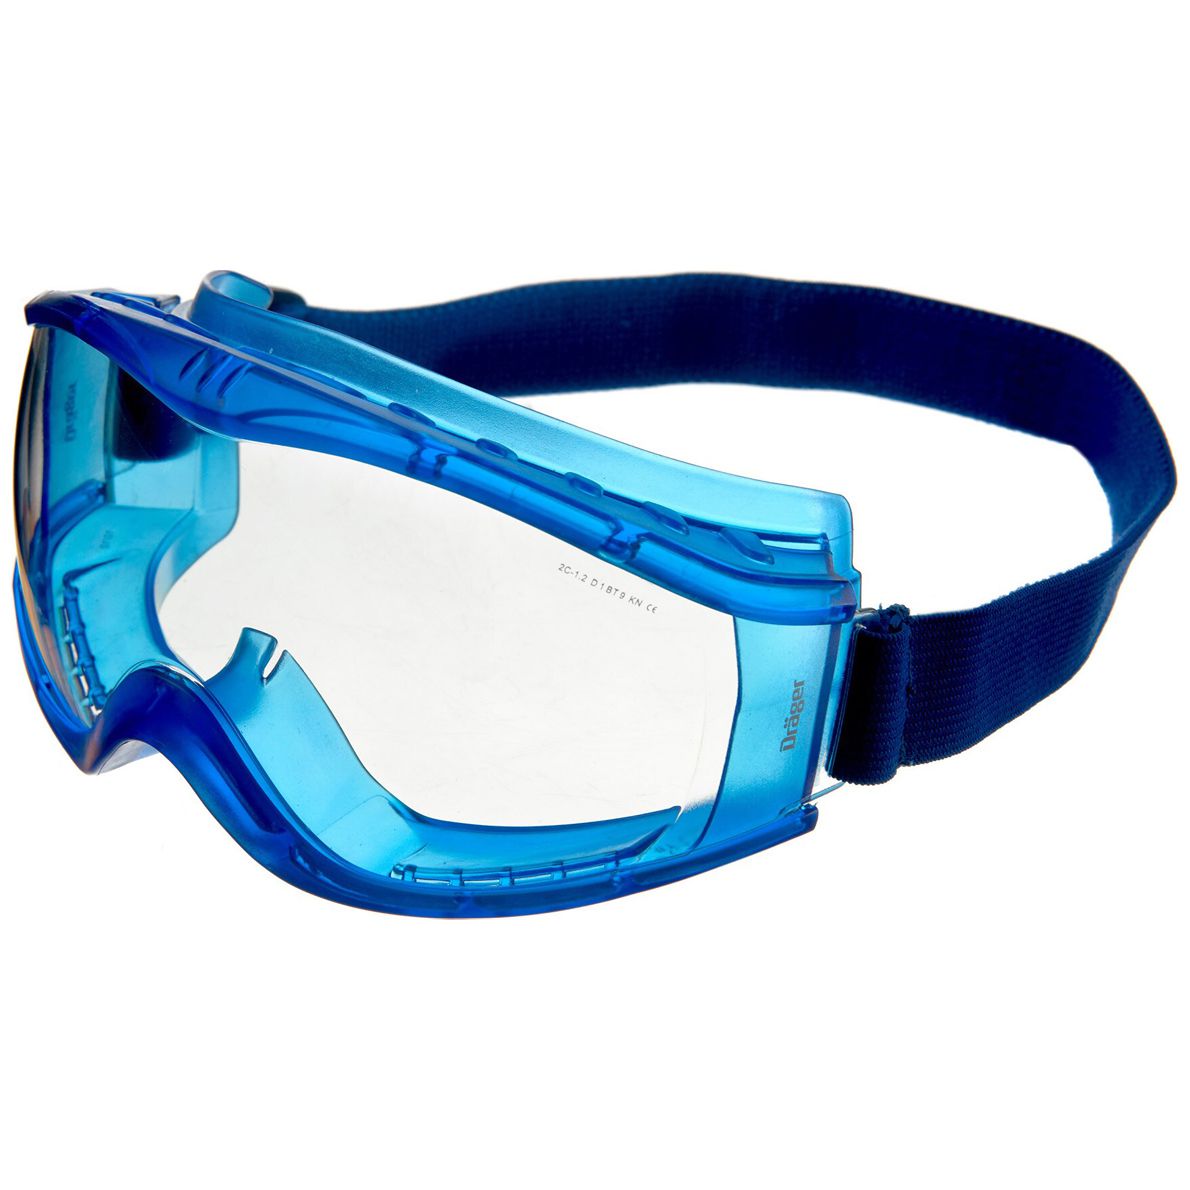 Dräger X-pect 8520 Vollsicht-Schutzbrille - für Brillenträger - kratz- & beschlagfest - EN 166 - Dunkelblau/Klar